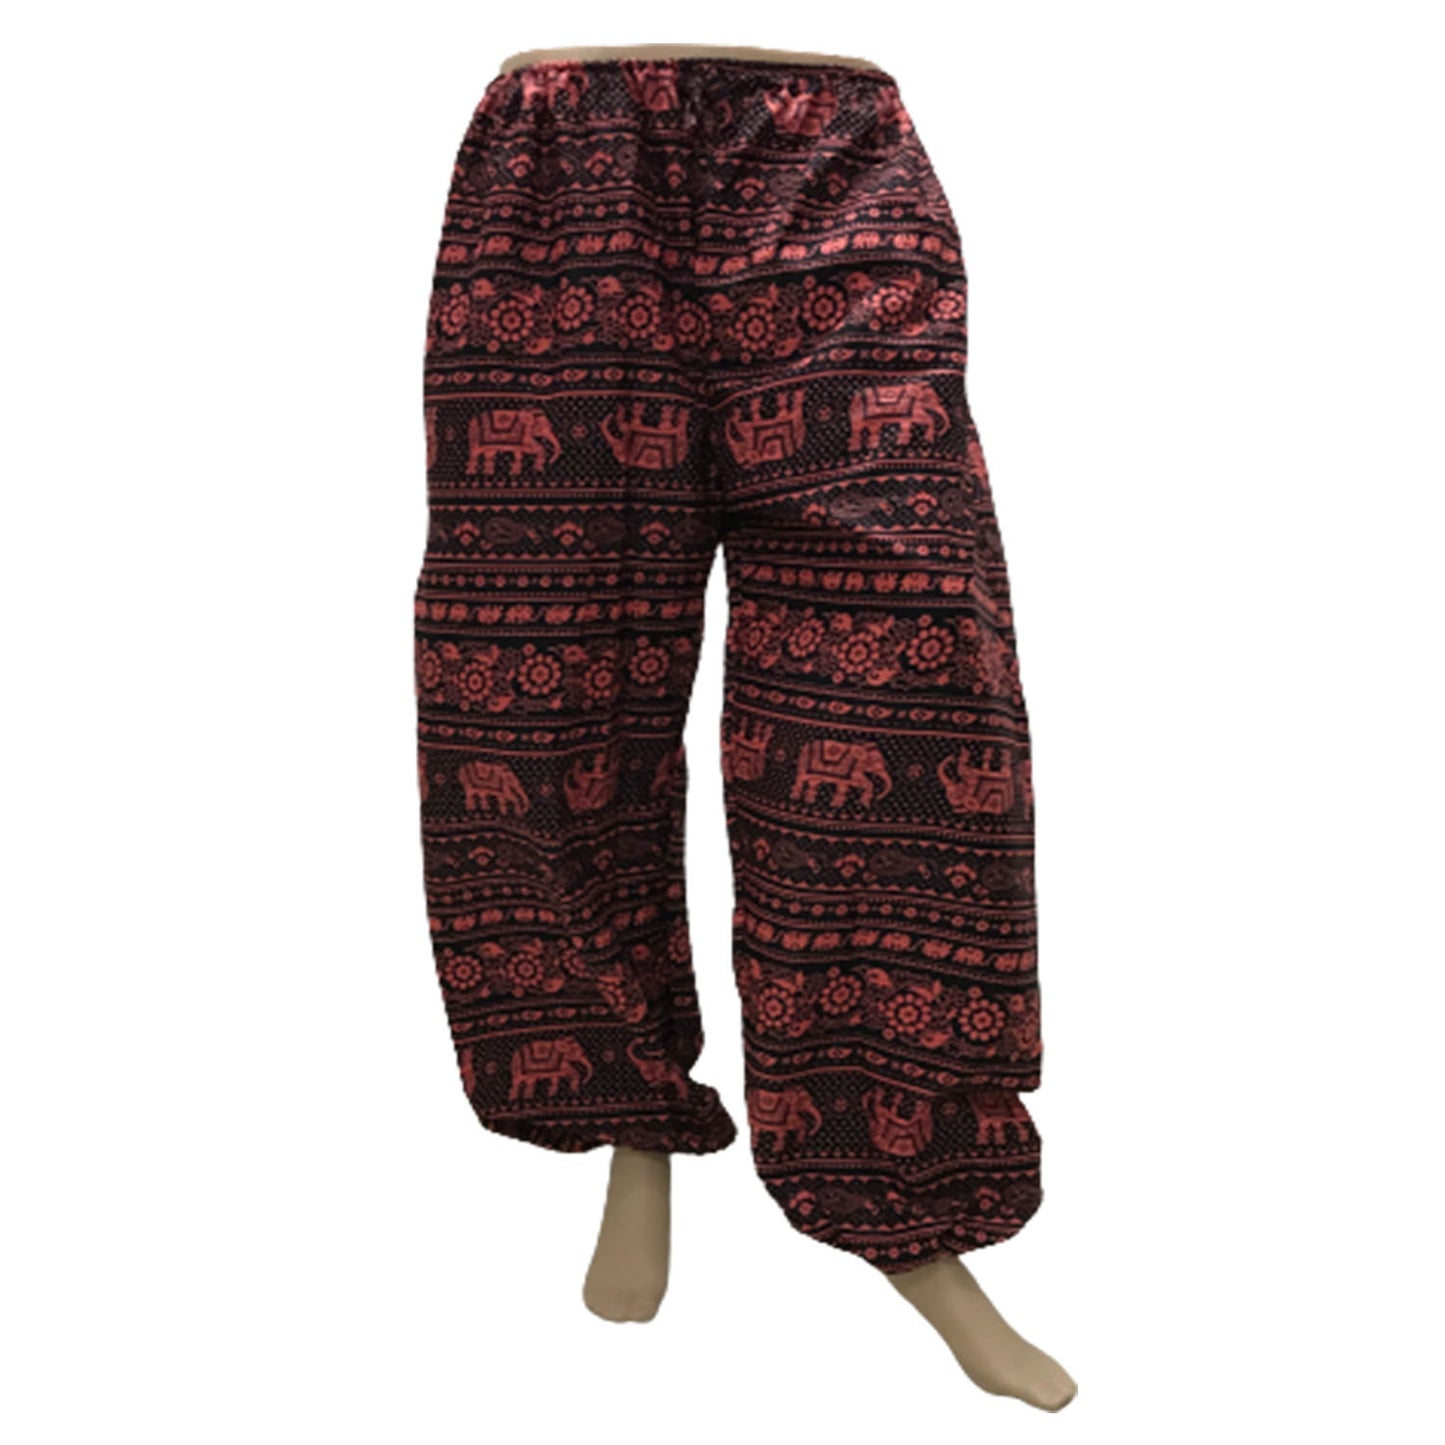 Ganesha Handicrafts, Comfy Cuffed Elephant Print Trousers, Elephant Print Trousers, Comfy Cuffed Trousers, Trending Trousers, Red Trousers.